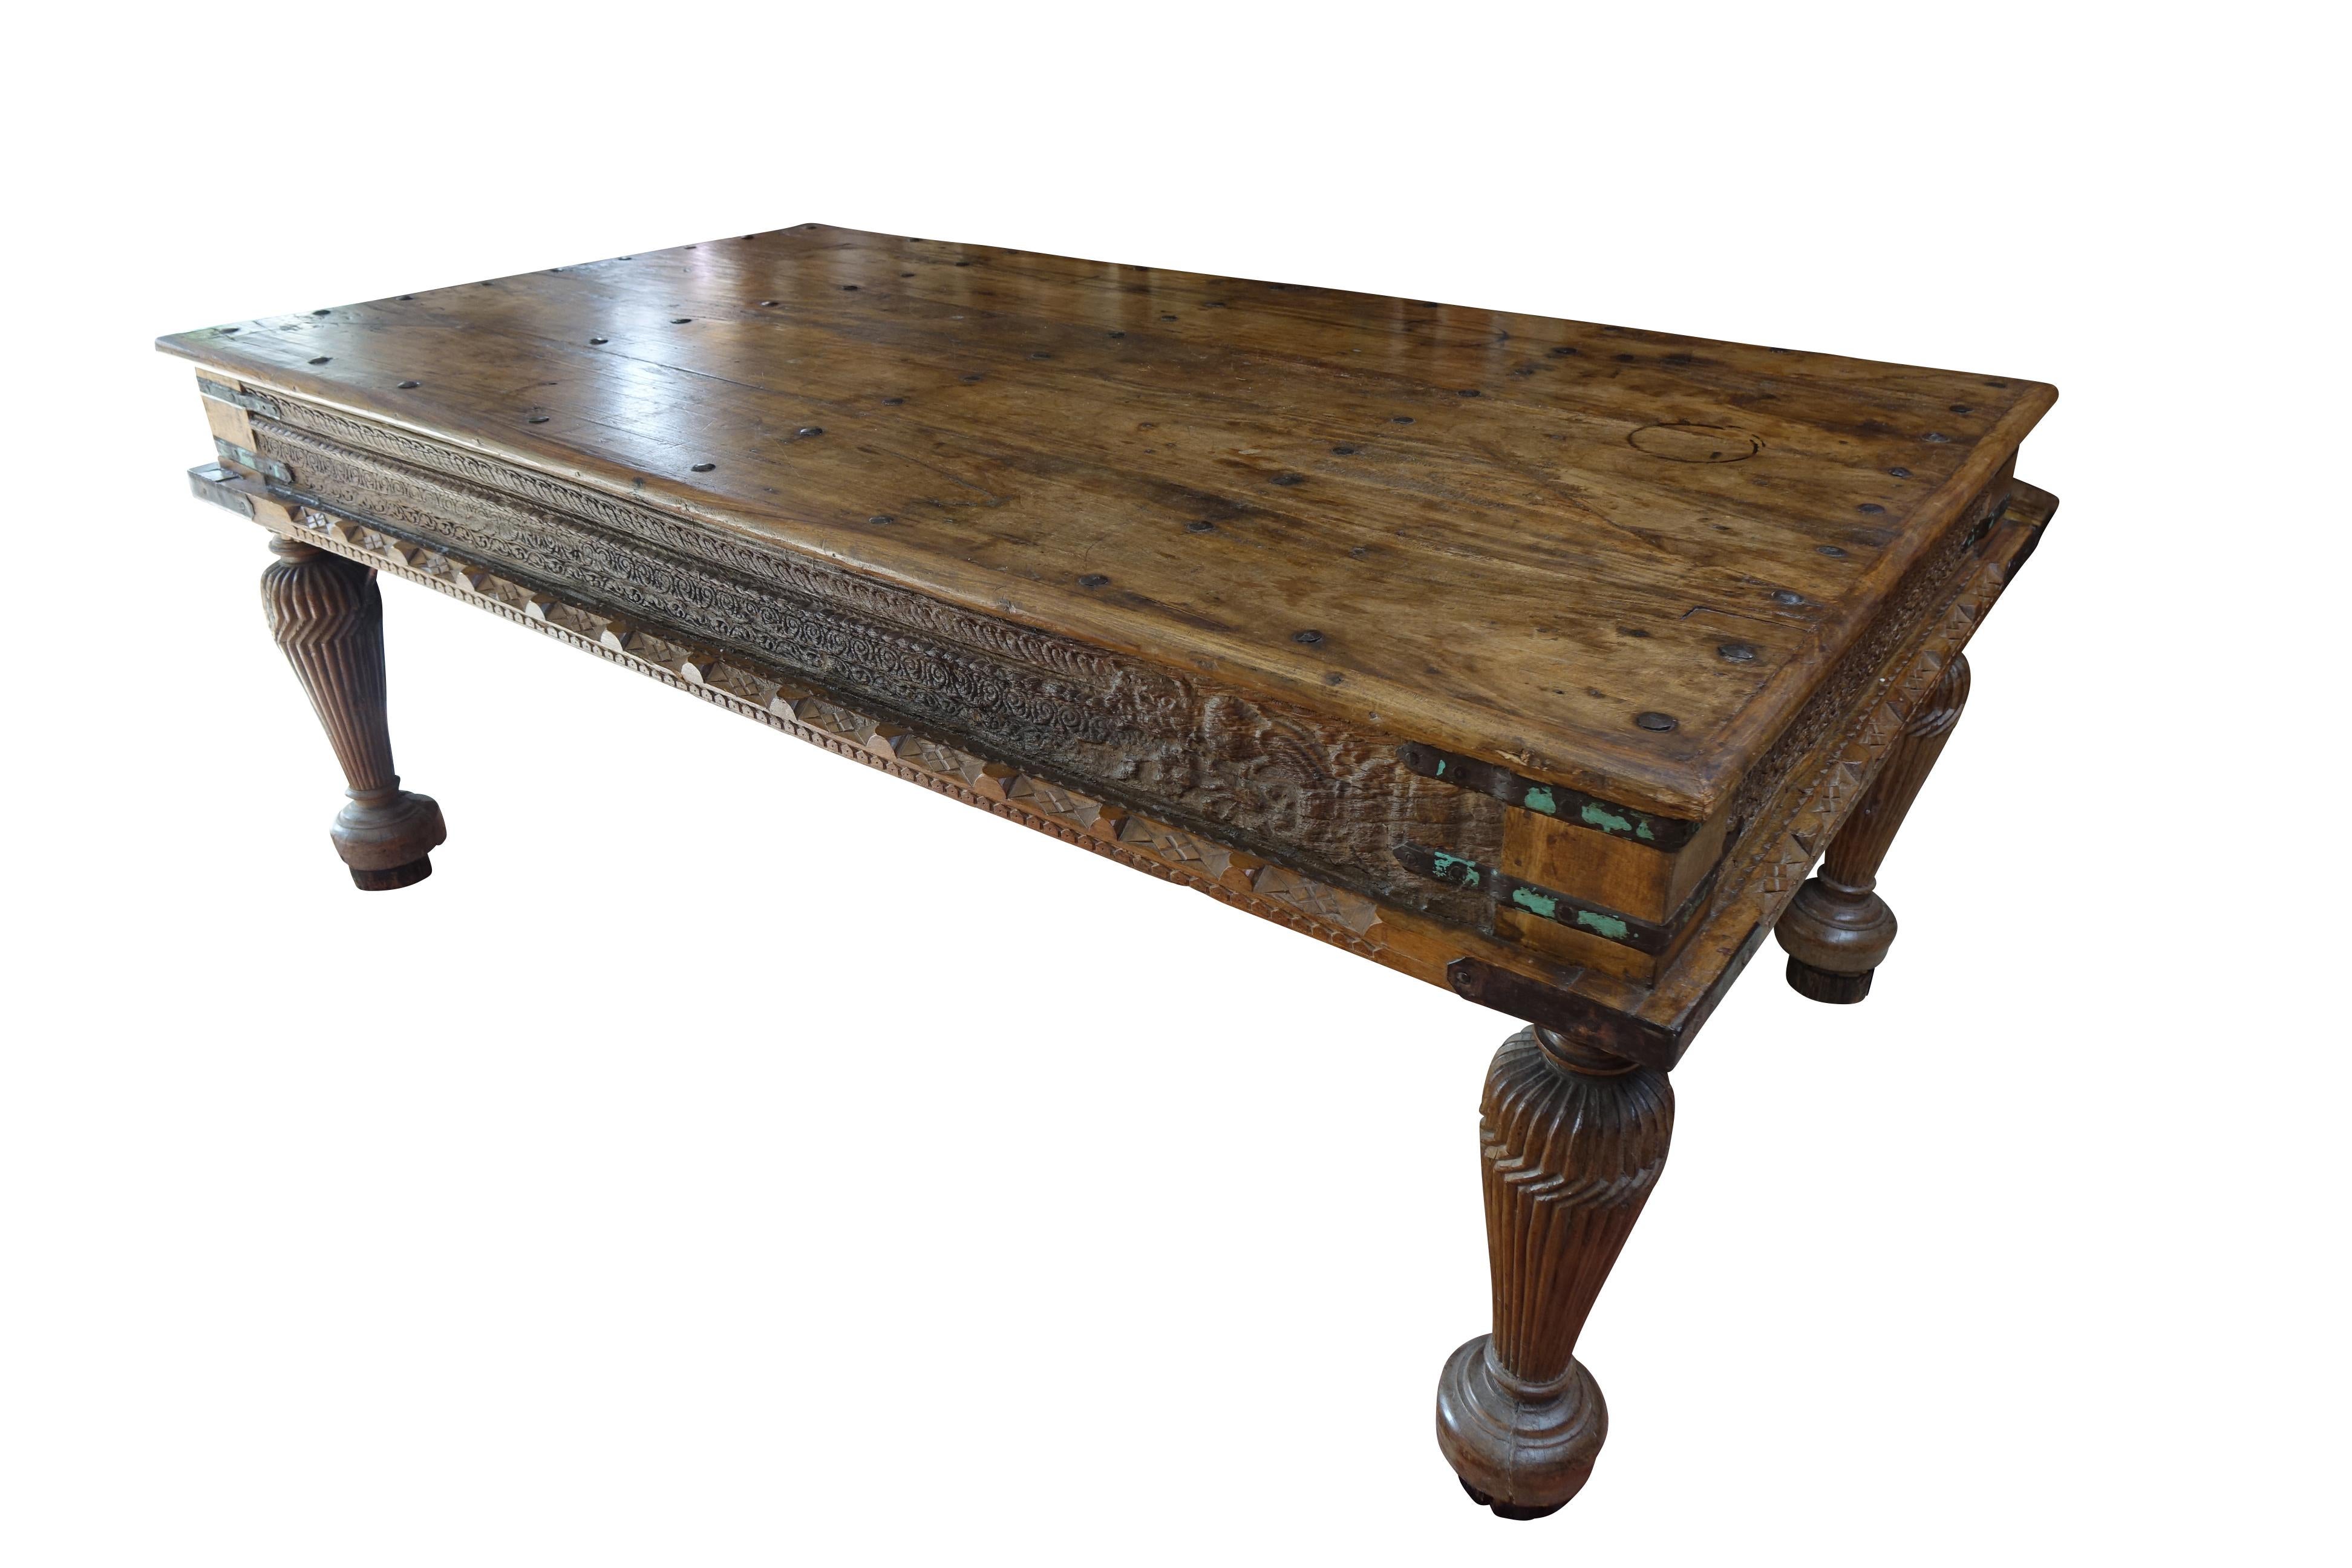  Spectaculaire table-console de palais de maharaja indien en bois de teck, 19e siècle.
 Une table de palais spectaculaire, souvent utilisée comme console dans les immenses couloirs des palais des maharajas. Pièce très décorative parfaite pour les